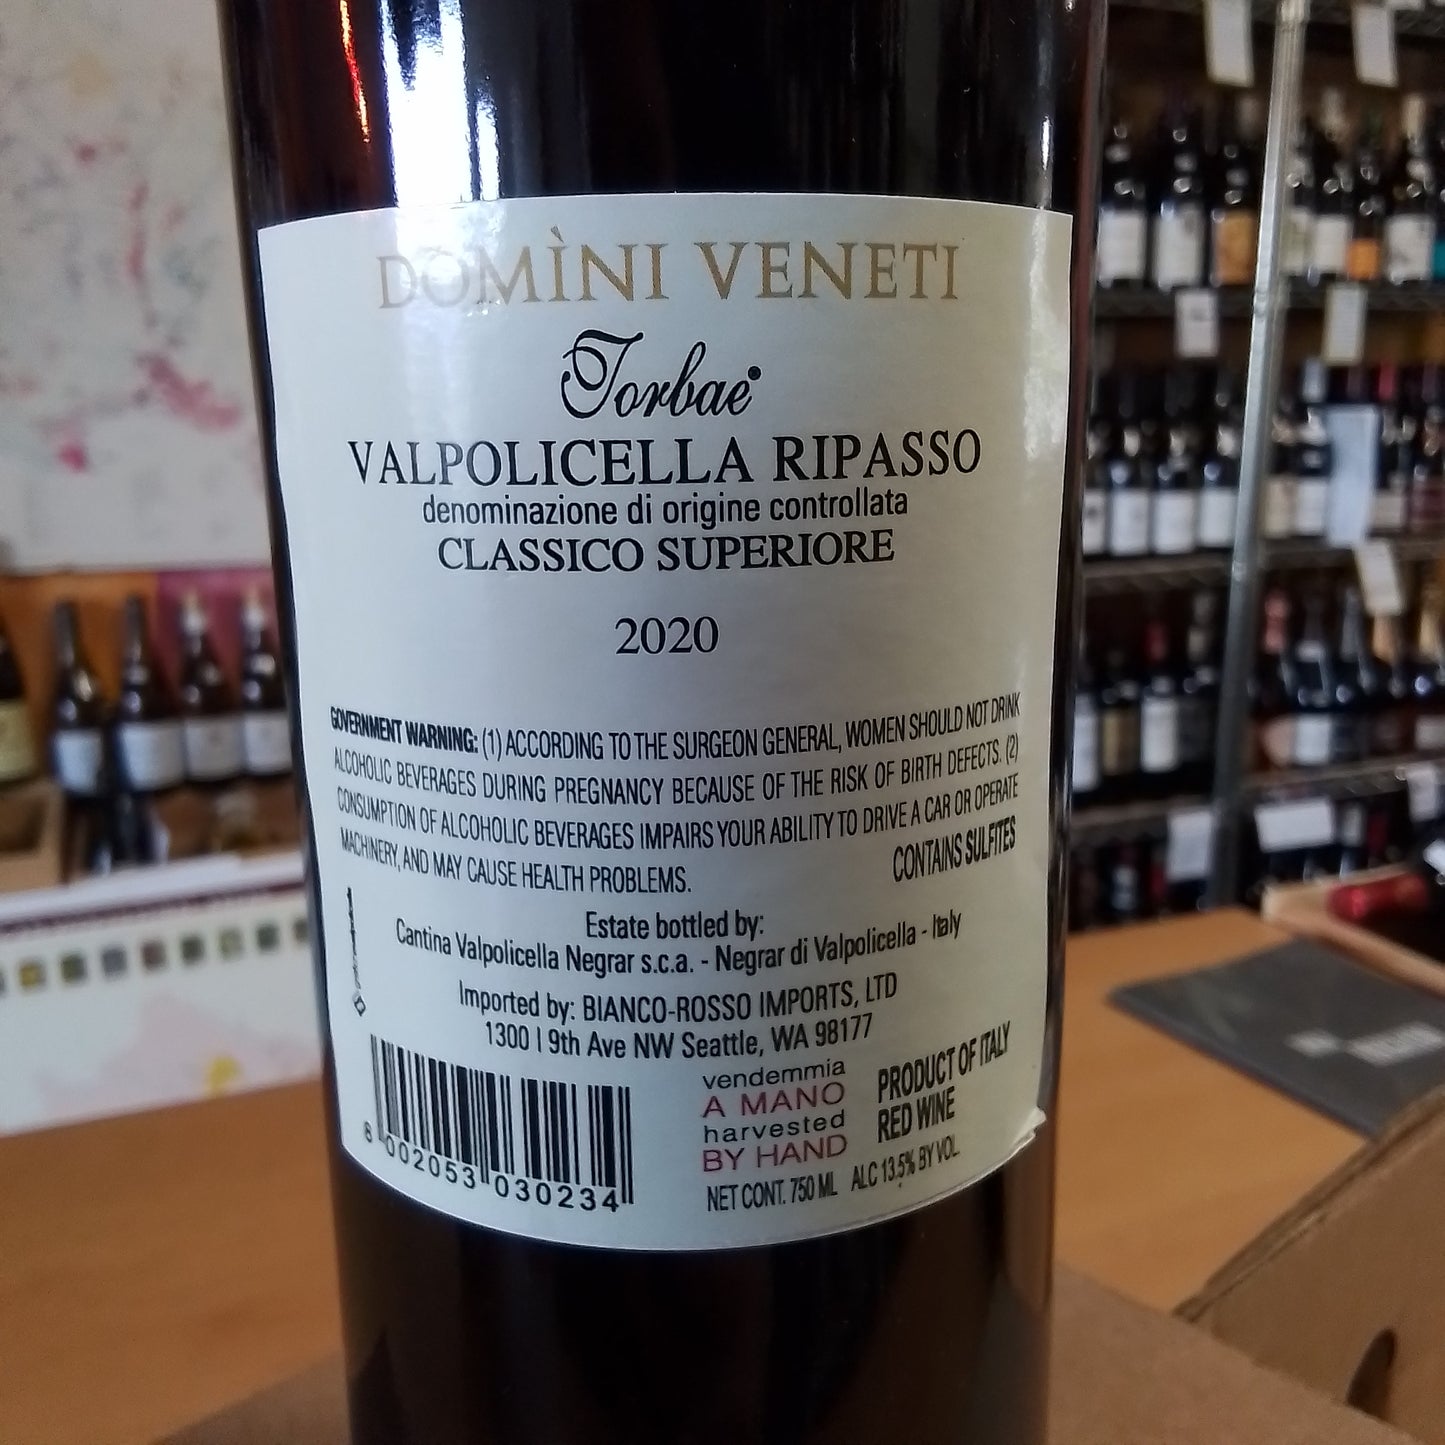 DOMINI VENETI 2020 Red Blend 'Torbae Valpolicella Classico Superiore Ripasso' (Veneto, Italy)